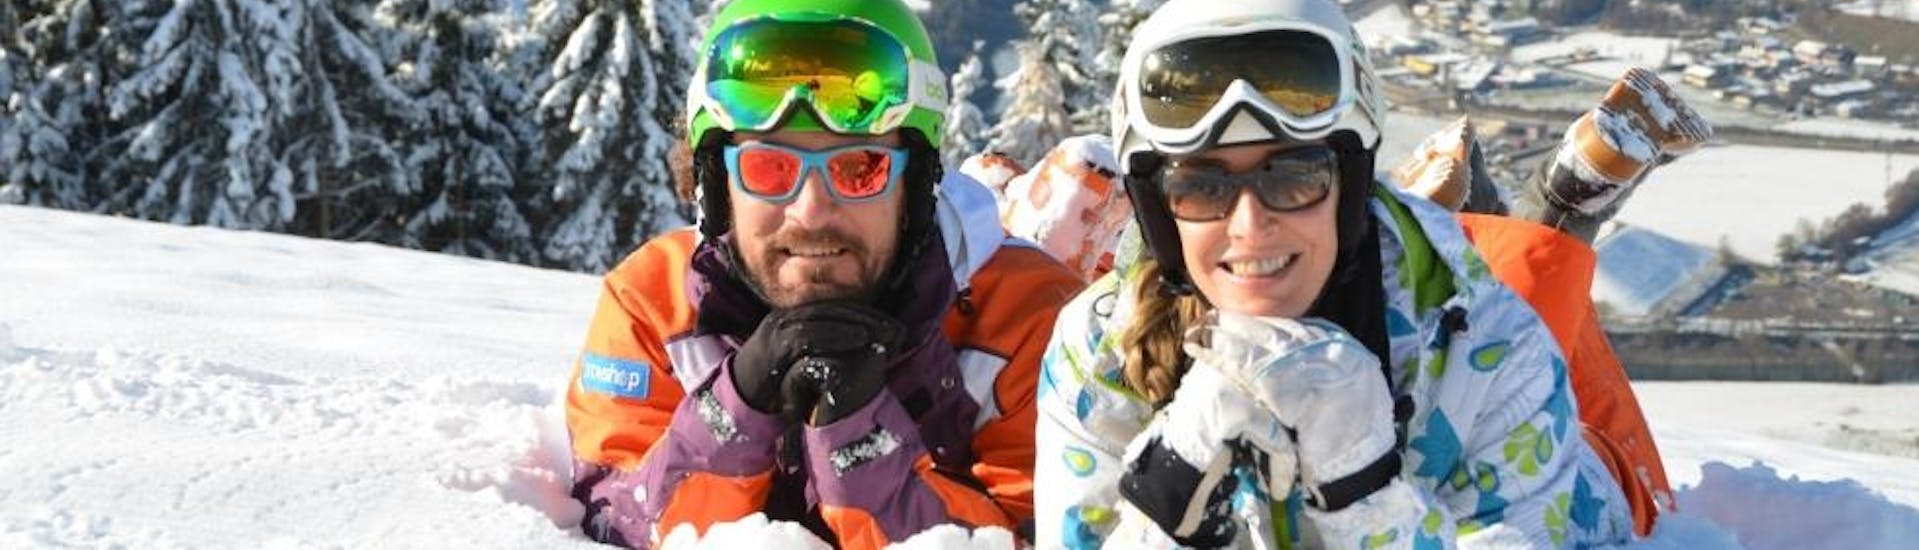 Clases de esquí para adultos a partir de 15 años para todos los niveles con Skischule Toni Gruber.